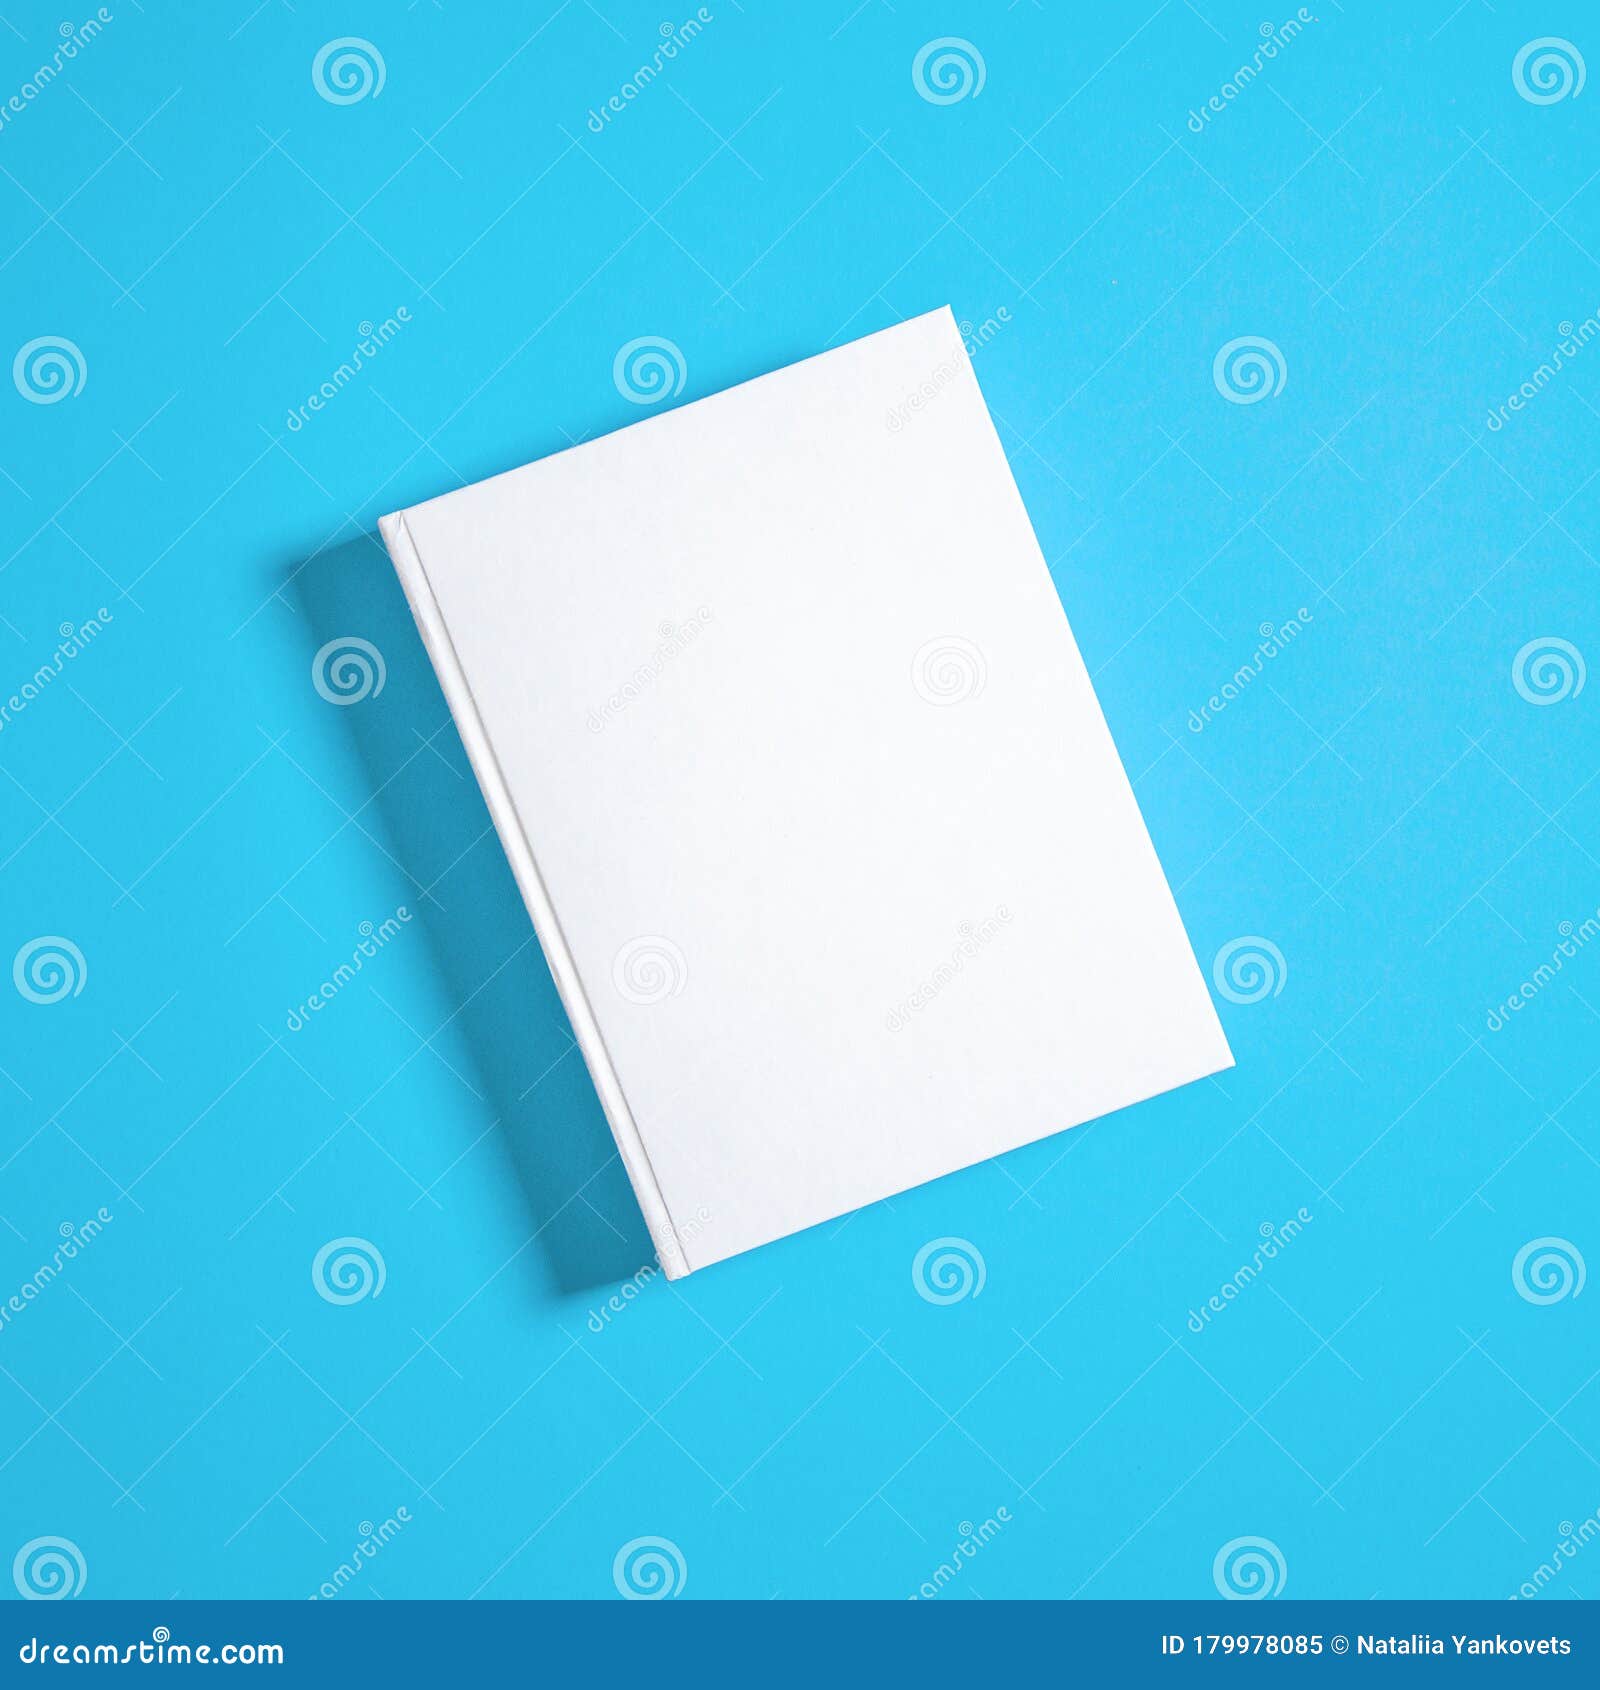 Download Mockup De Livro Branco Fechado Em Papel Branco Imagem de ...